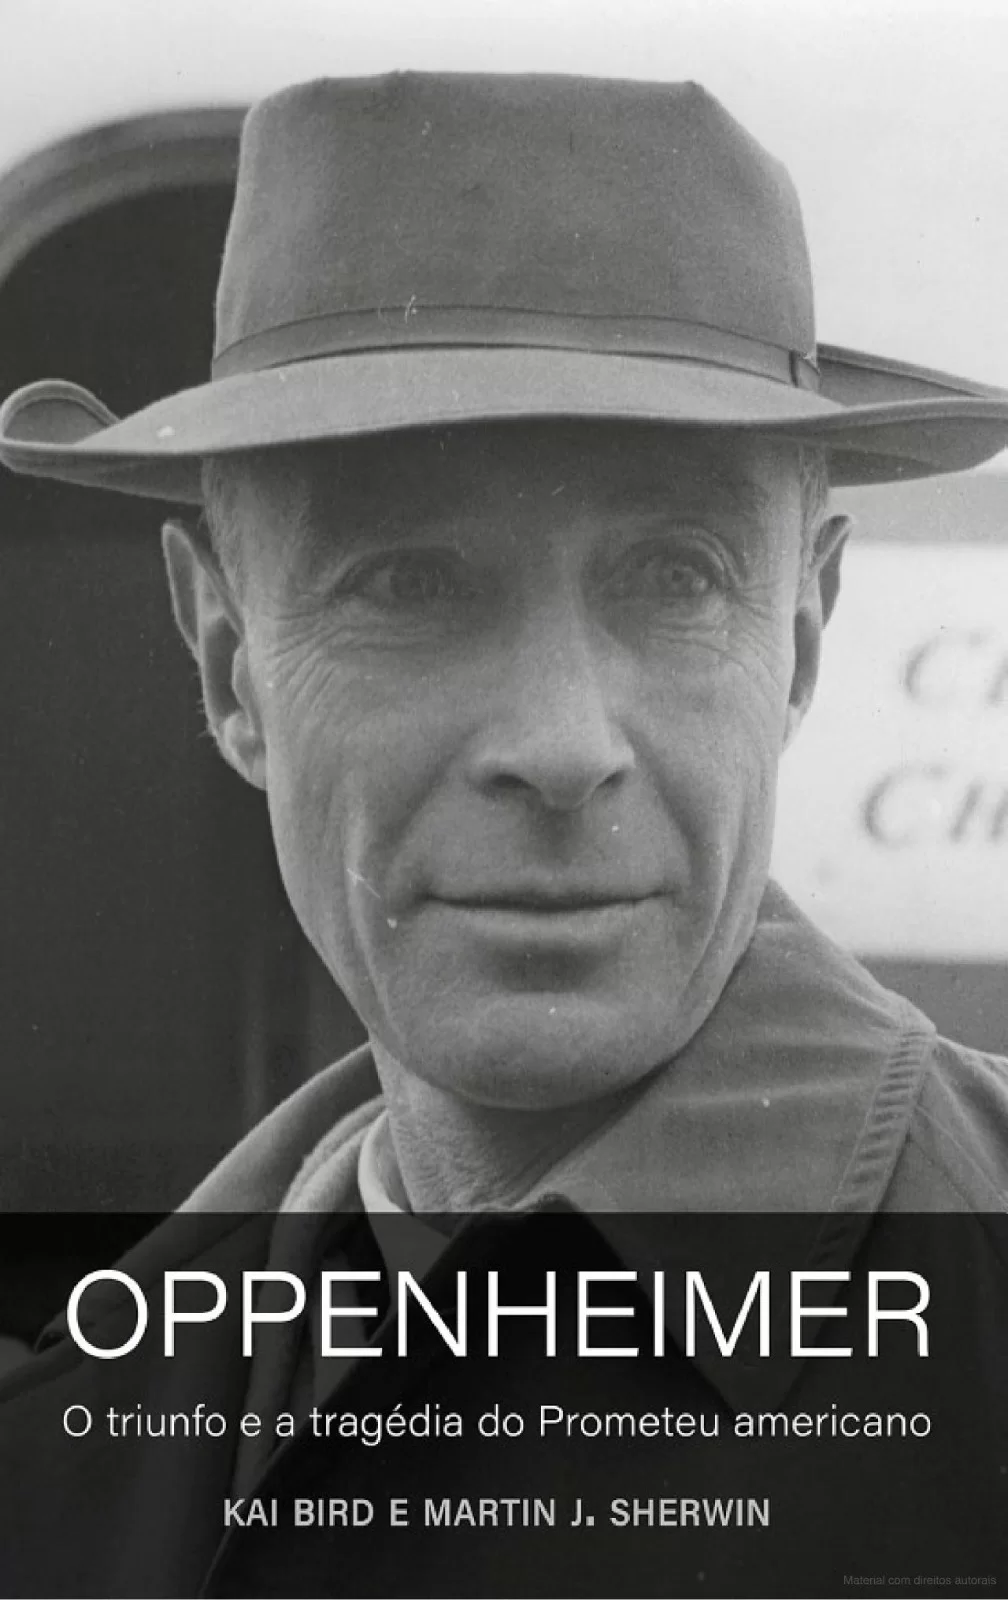 Capa do livro biografia de Oppenheimer. (Reprodução/Amazon)